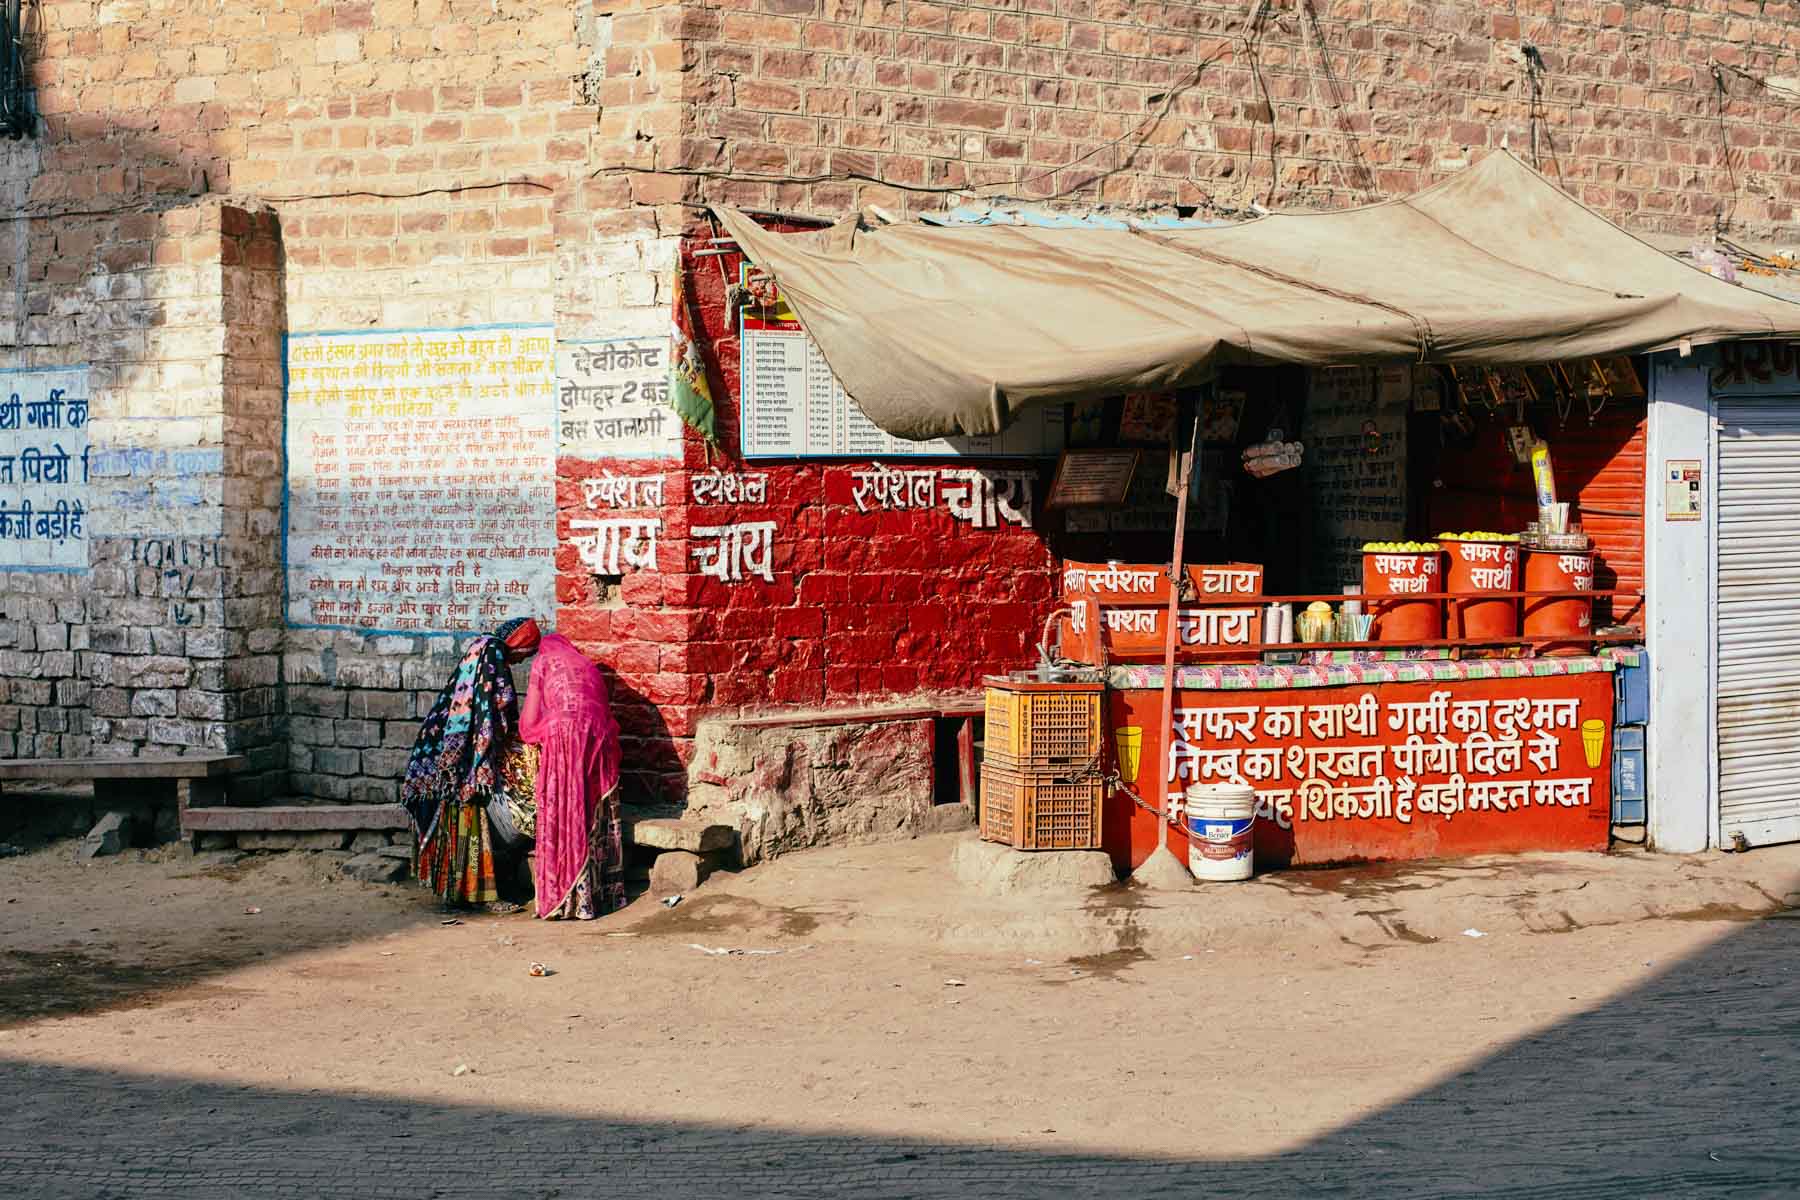 Frauen in Jodhpur warten am Kiosk auf den Bus/ Rajasthan/ Indien, 2018